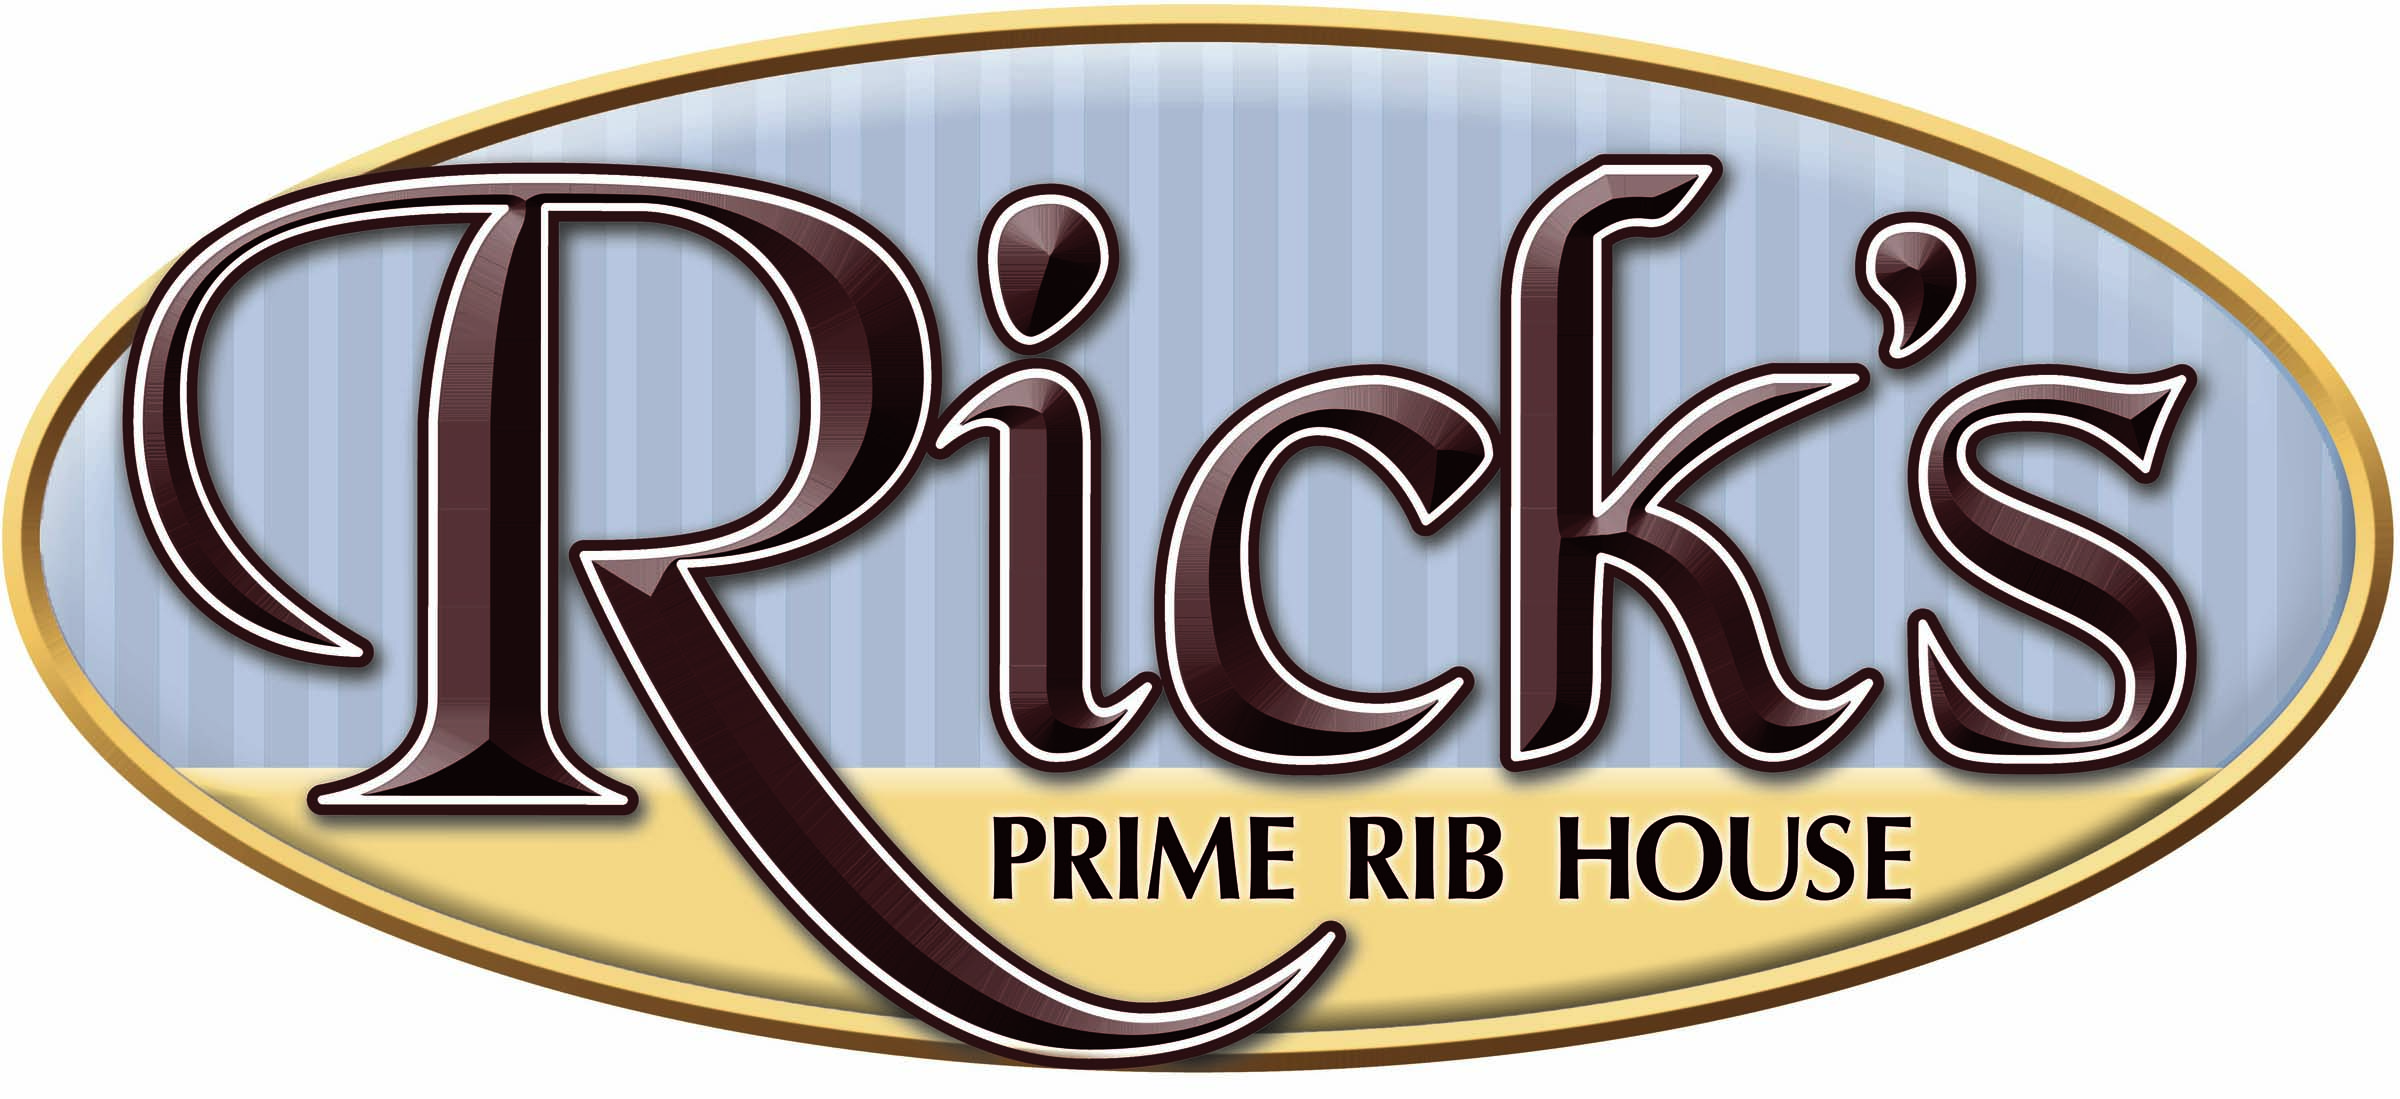 Rick's Prime Rib House